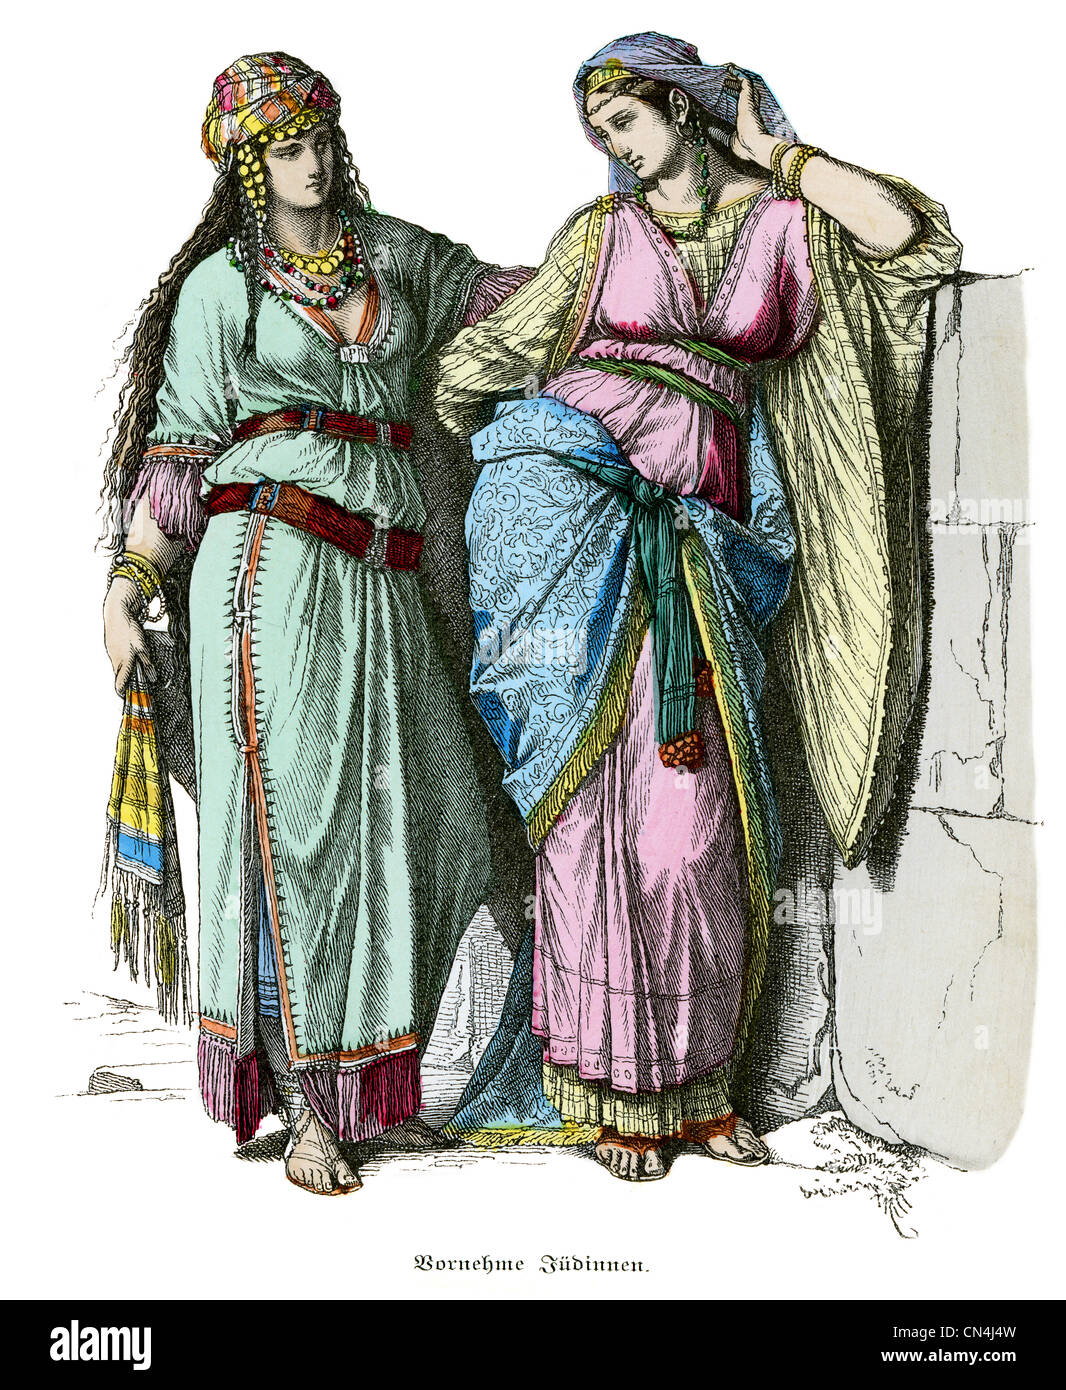 Les femmes juives d'avant l'époque du Christ Banque D'Images